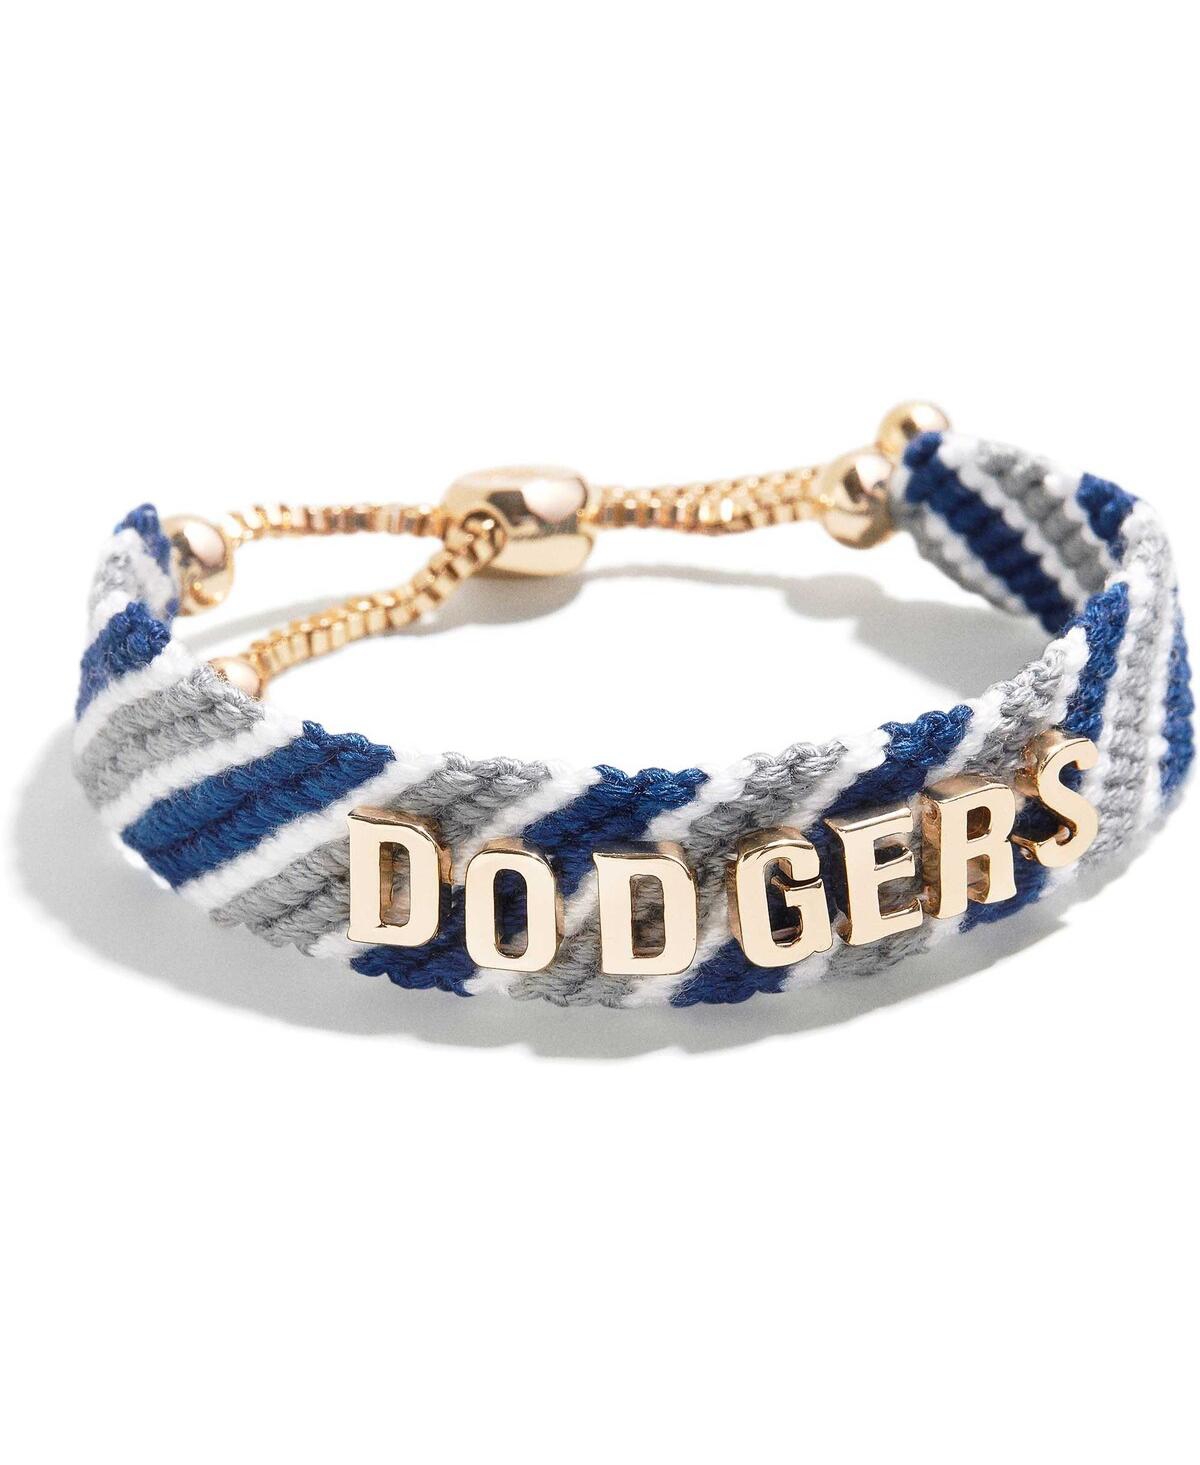 Women's Baublebar Los Angeles Dodgers Woven Friendship Bracelet - Blue